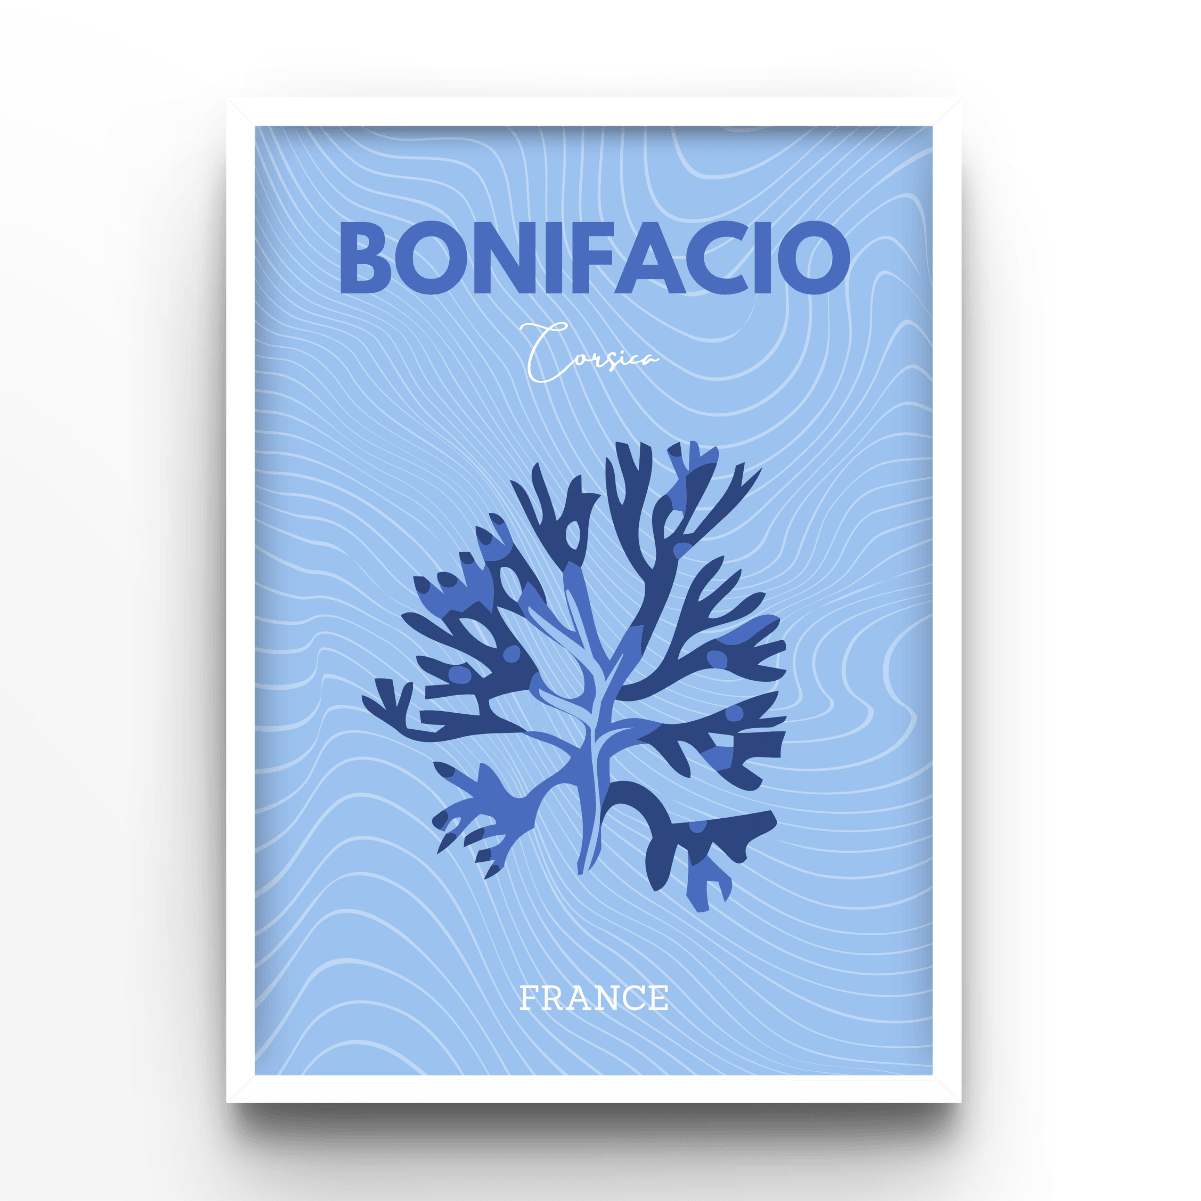 Bonifacio - A4, A3, A2 Posters Base - Poster Print Shop / Art Prints / PostersBase